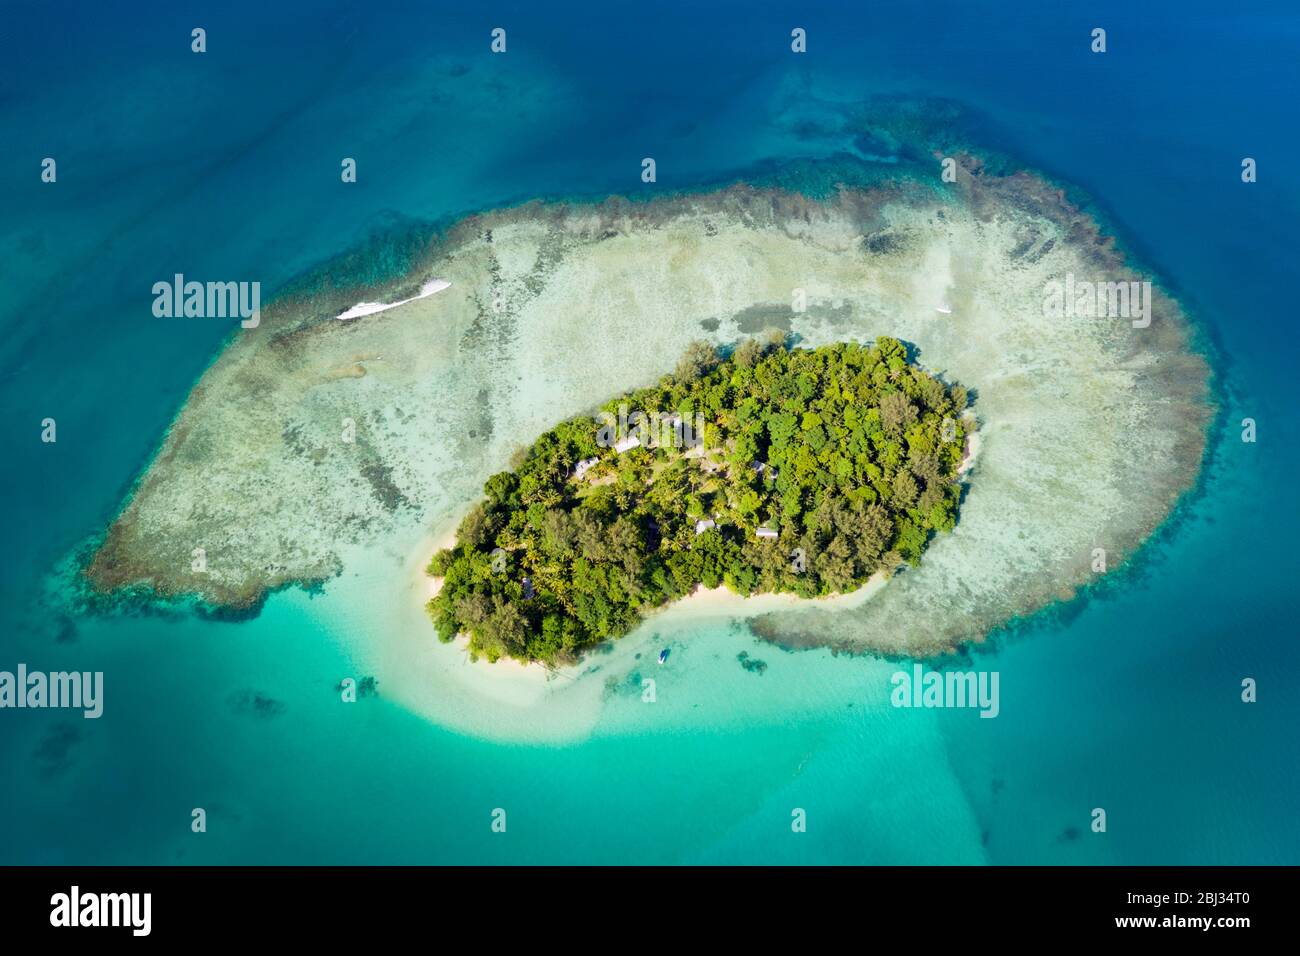 Vue aérienne de Lissenung Island, New Ireland, Papouasie Nouvelle Guinée Banque D'Images